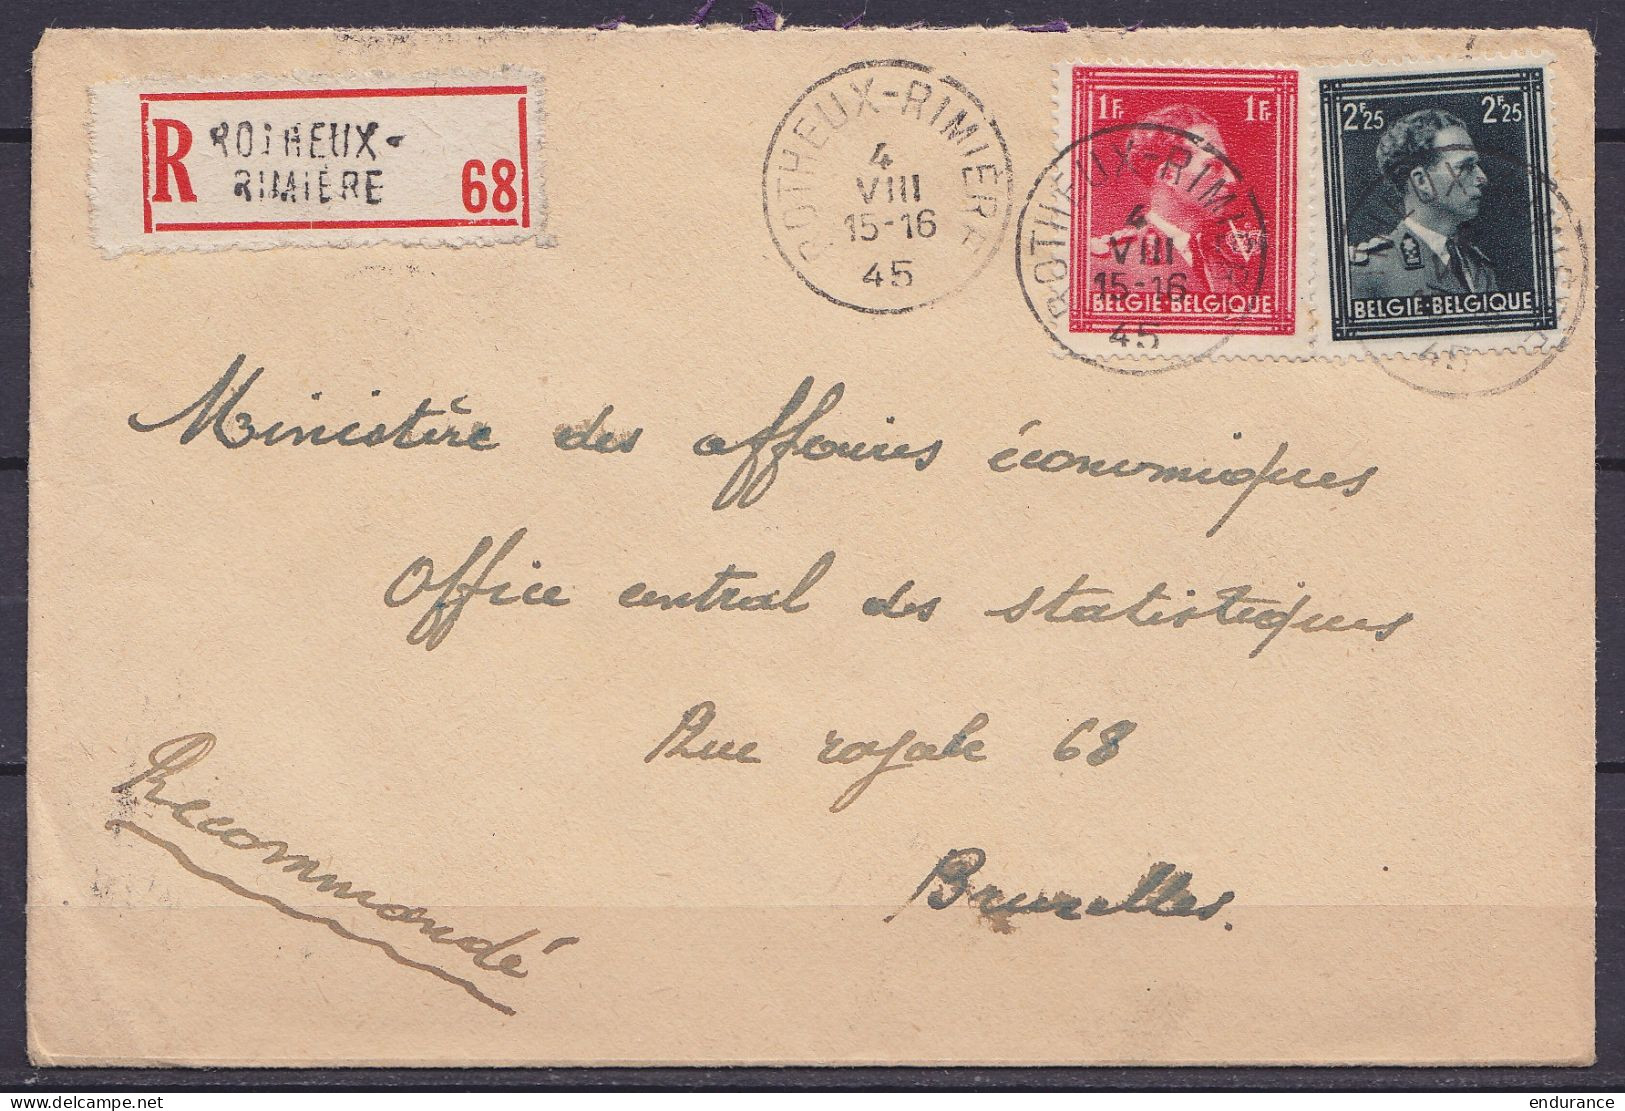 L. Recommandée Affr. N°644+690 Càd ROTHEUX-RIMIERE /4 VIII 1945 Pour BRUXELLES - 1936-1957 Offener Kragen